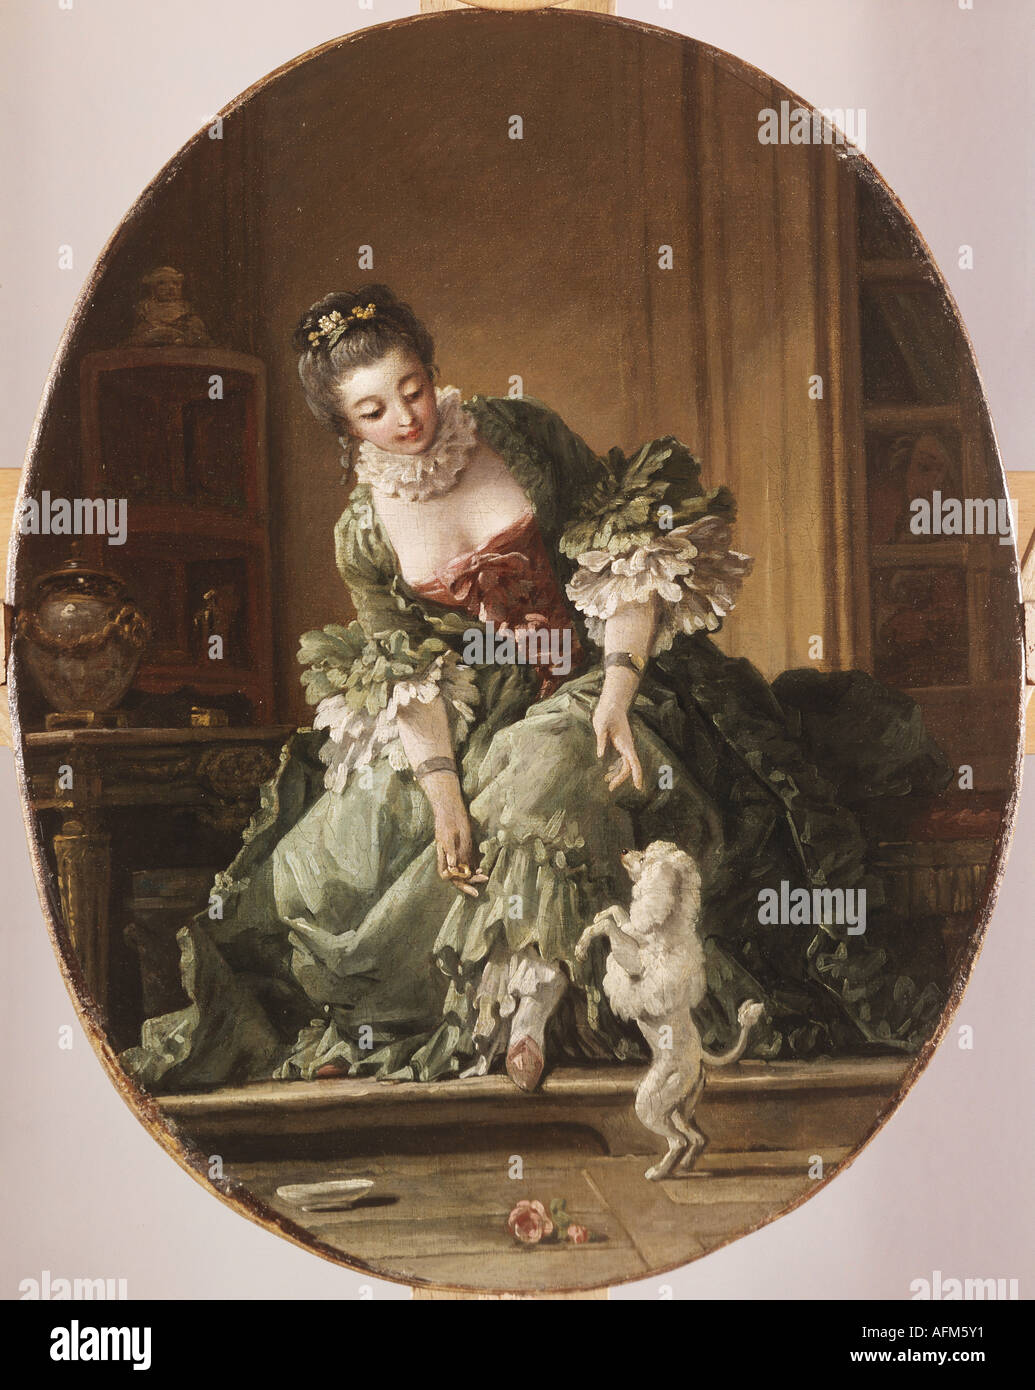 "Bildende Kunst, Boucher, Francois (1703-1770), Malerei,"lehrbare Doggy", ca. 1740, Volkskunst Galeere, Karlsruhe, Ger Stockfoto